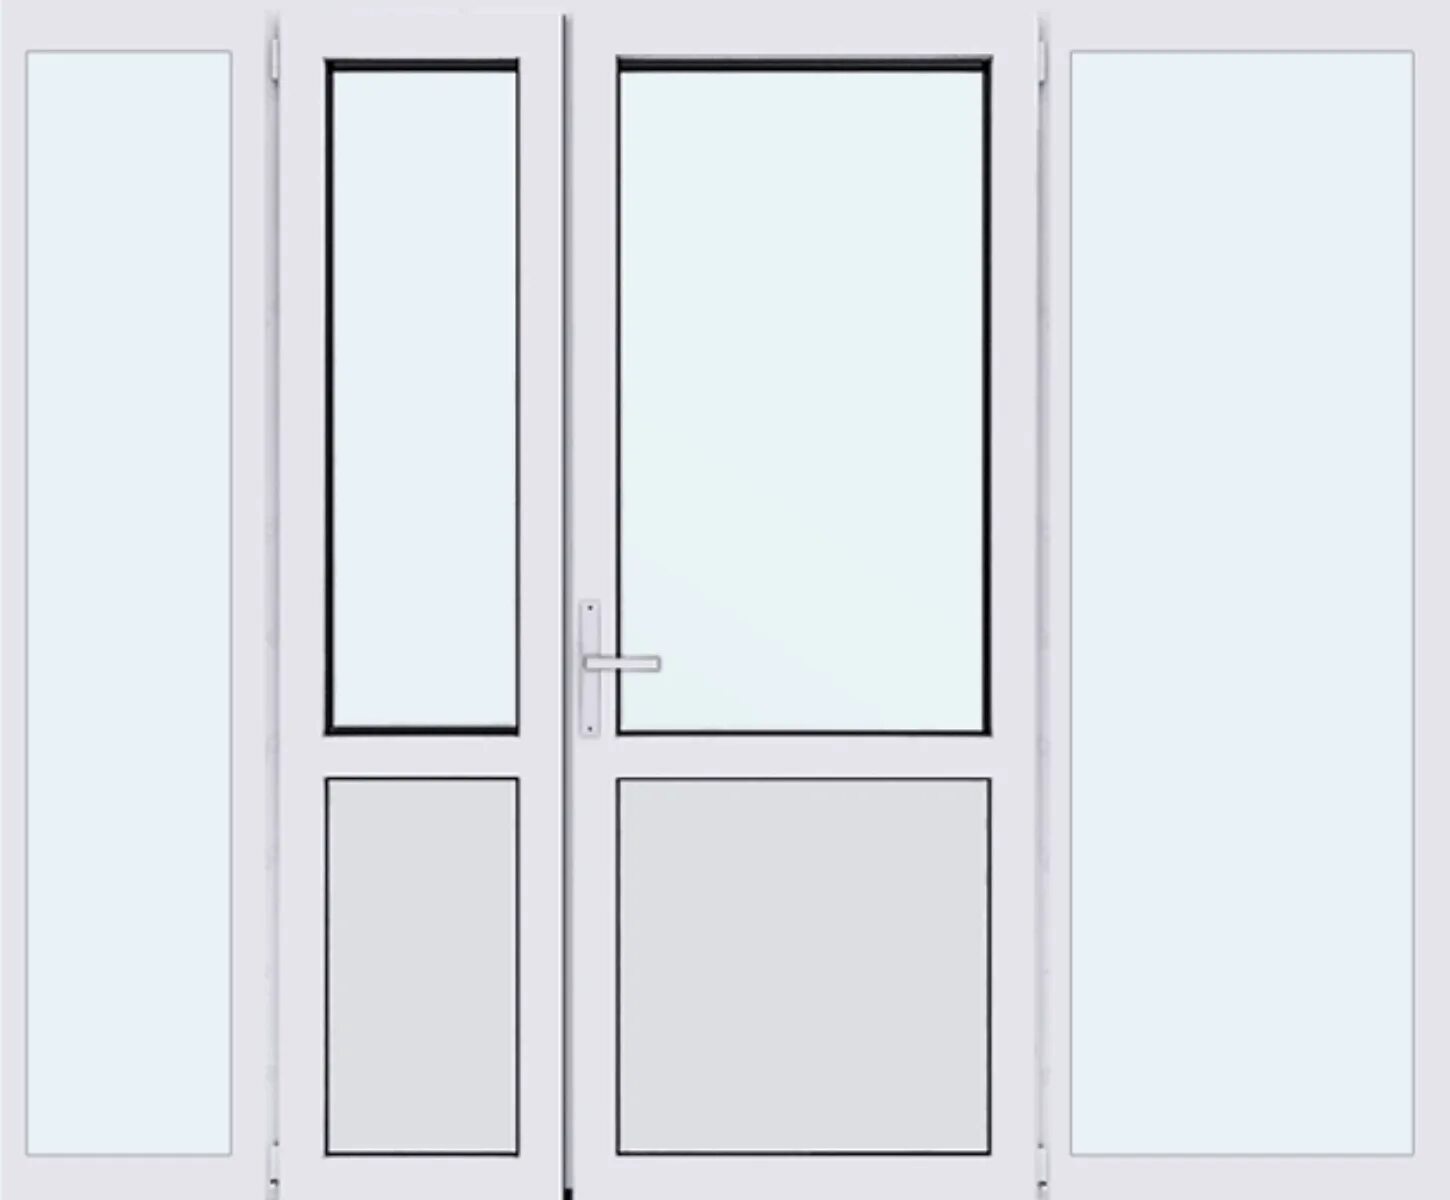 Блок дверной 2100х1800мм алюминиевый. Дверь ПВХ 700х2100 глухая. Пластиковые двери двухстворчатые. Белая пластиковая дверь. Входная балконная дверь